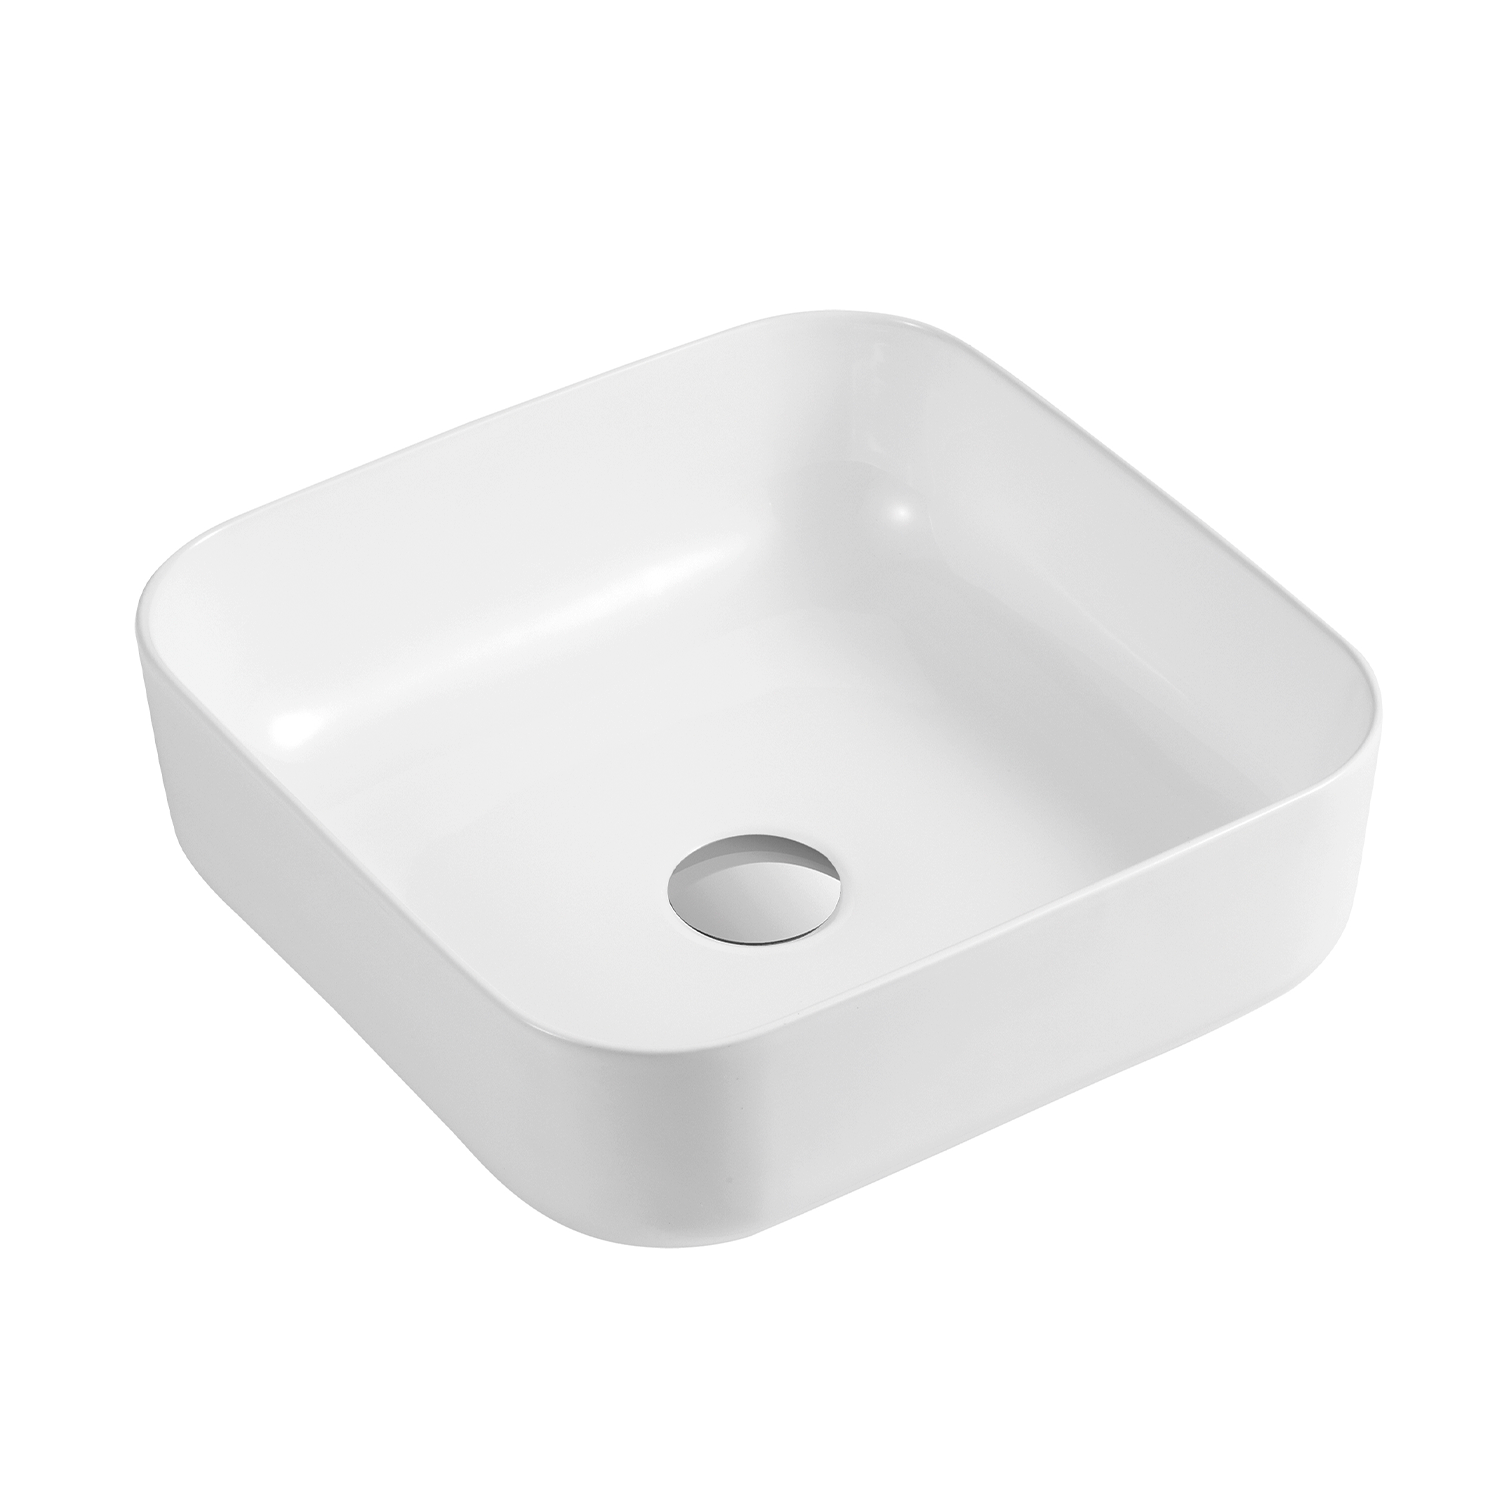 DAX Ceramic Square Bathroom Vessel Basin White Glossy - (15